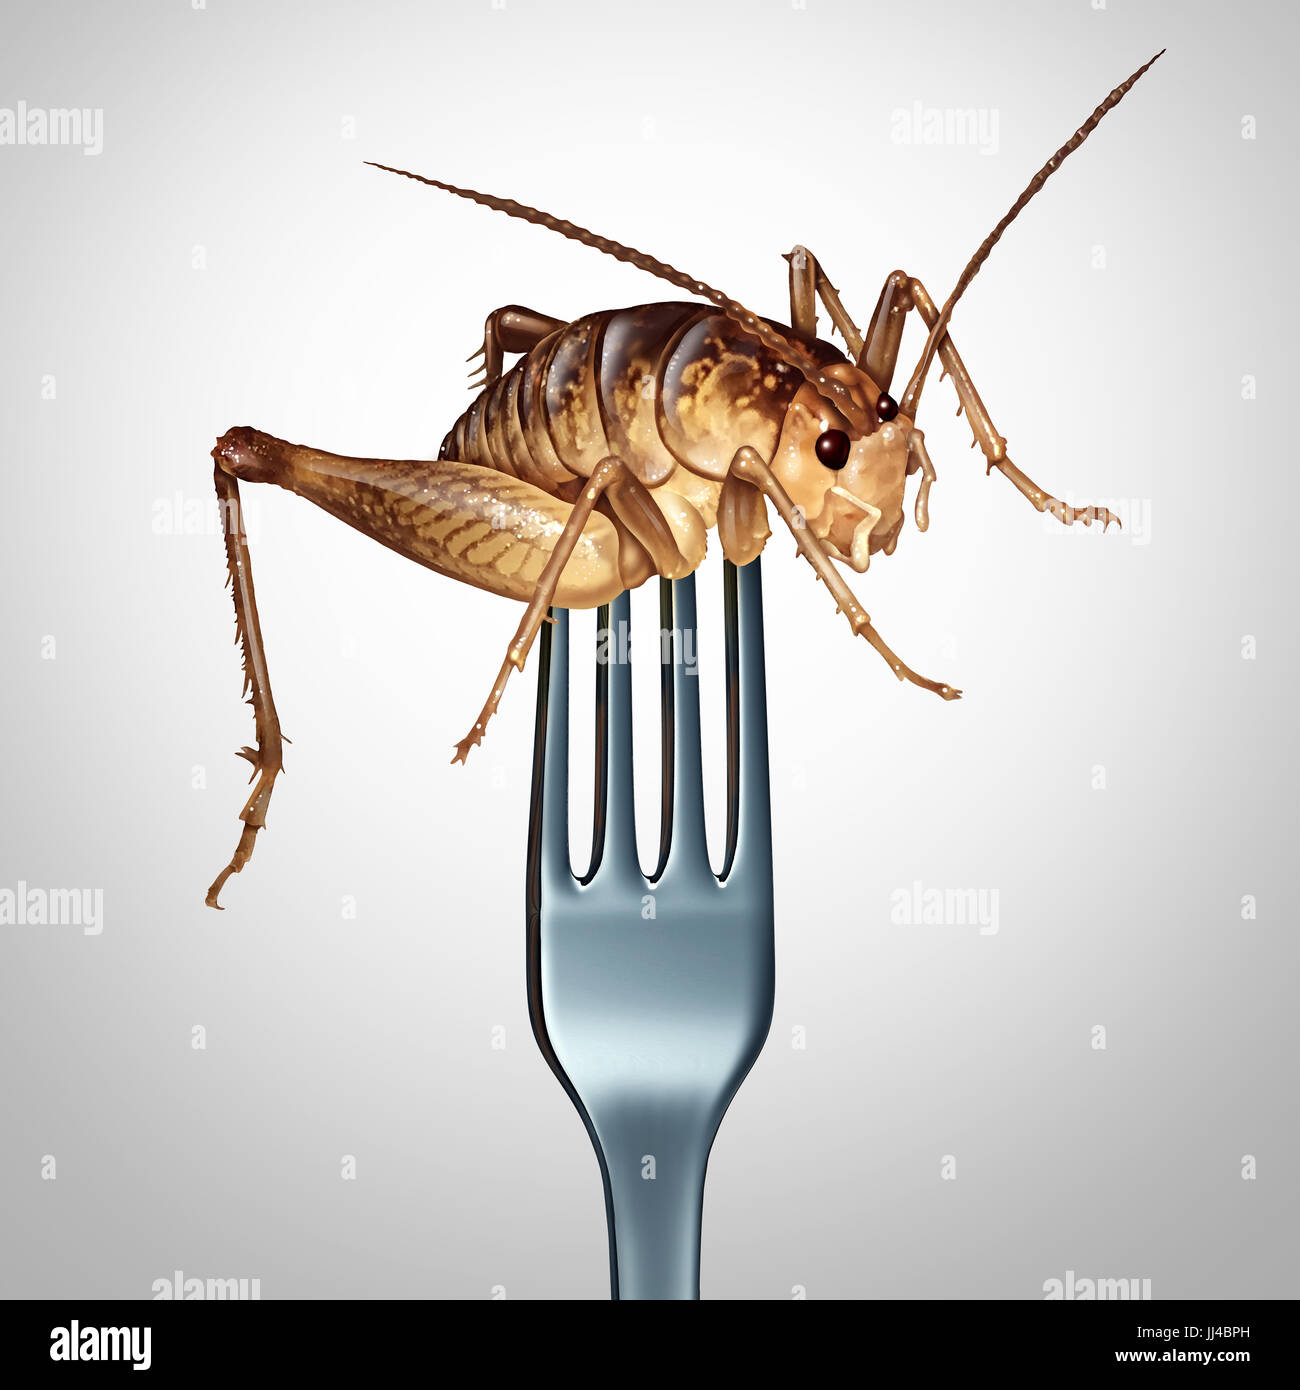 Mangia insetti e per mangiare i bug come cucina esotica e alternativa proteina alta nutrition food come una forca in un insetto di cricket come un simbolo. Foto Stock